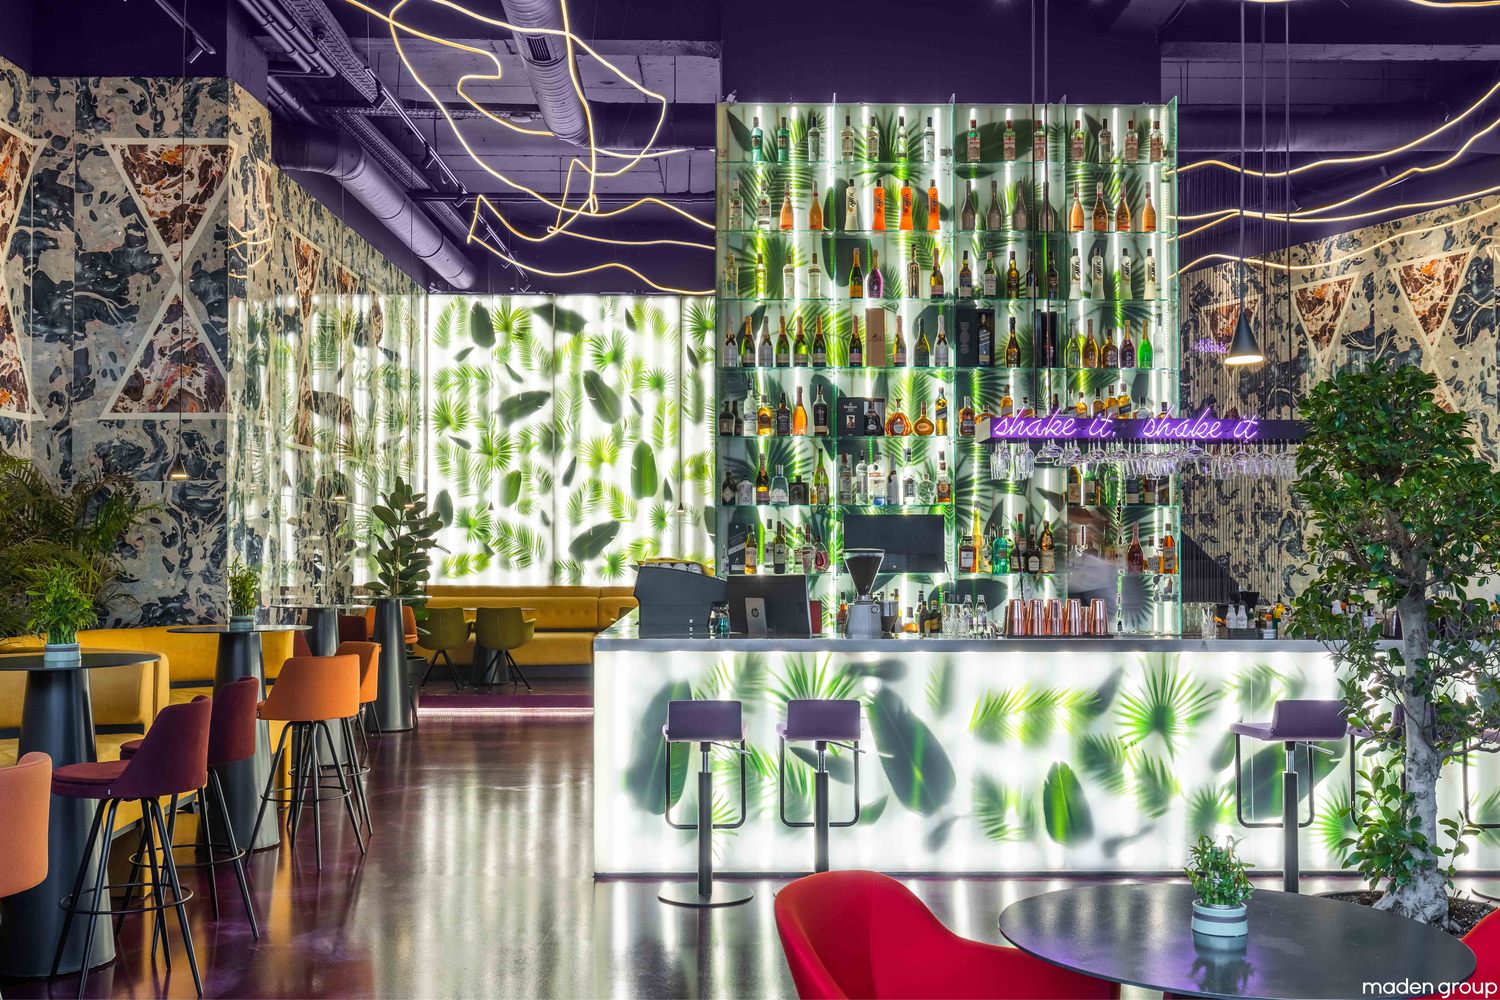 طراحی داخلی رستوران با استفاده از سه عنصر آثار هنری، رنگ و گیاهان